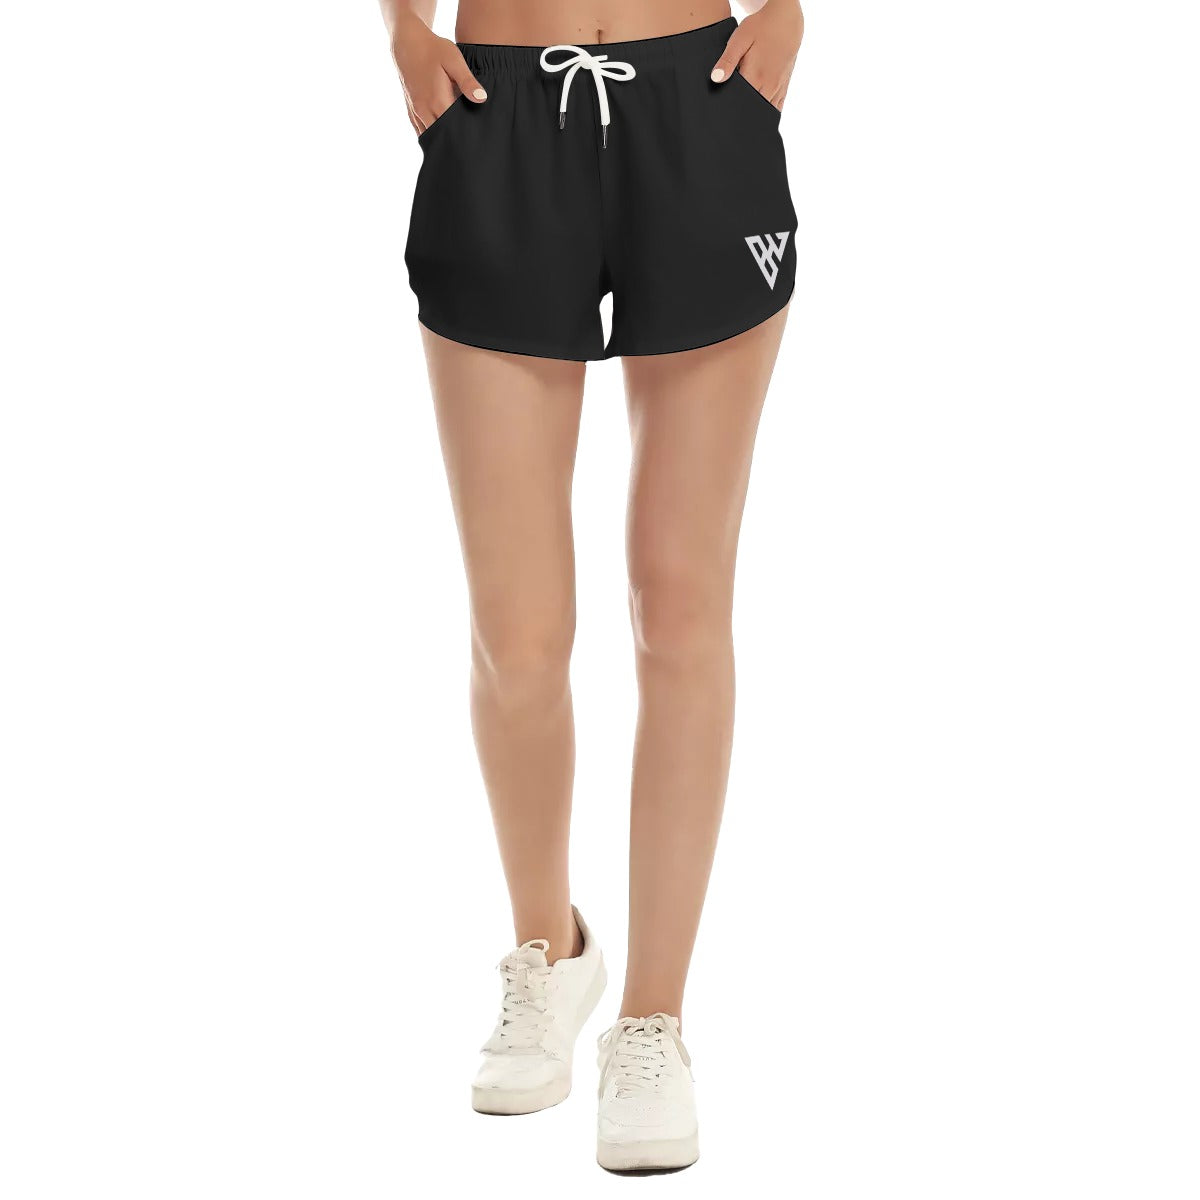 Beba Sports Shorts With Pockets